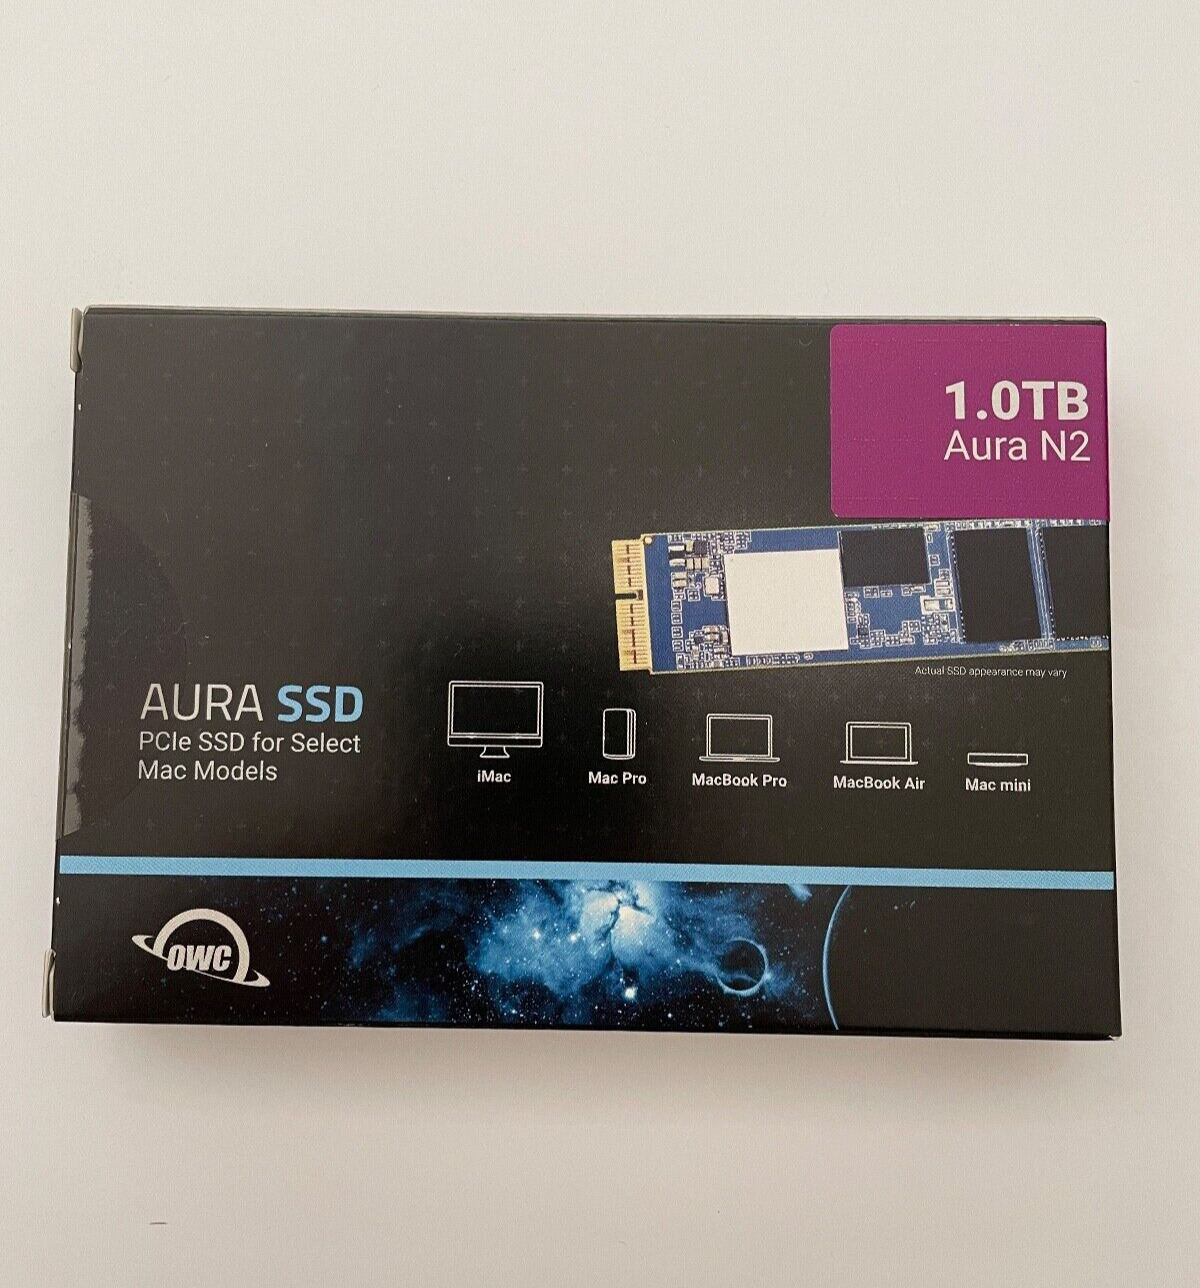 OWC 1.0TB Aura N2 SSD Drive